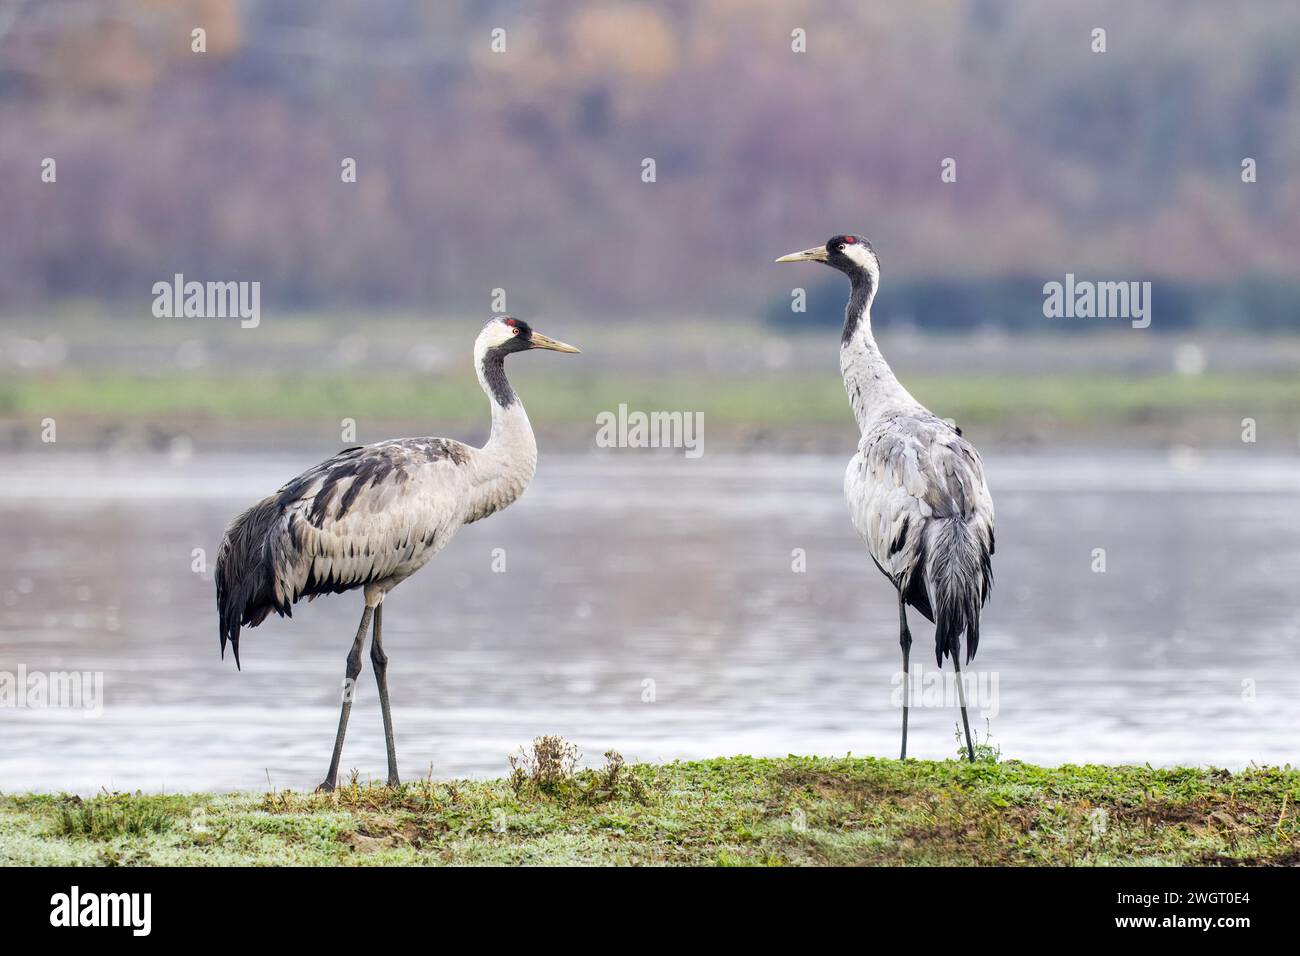 Cranes, Grus grus, socialising, isola della cona nature reserve, italy Stock Photo